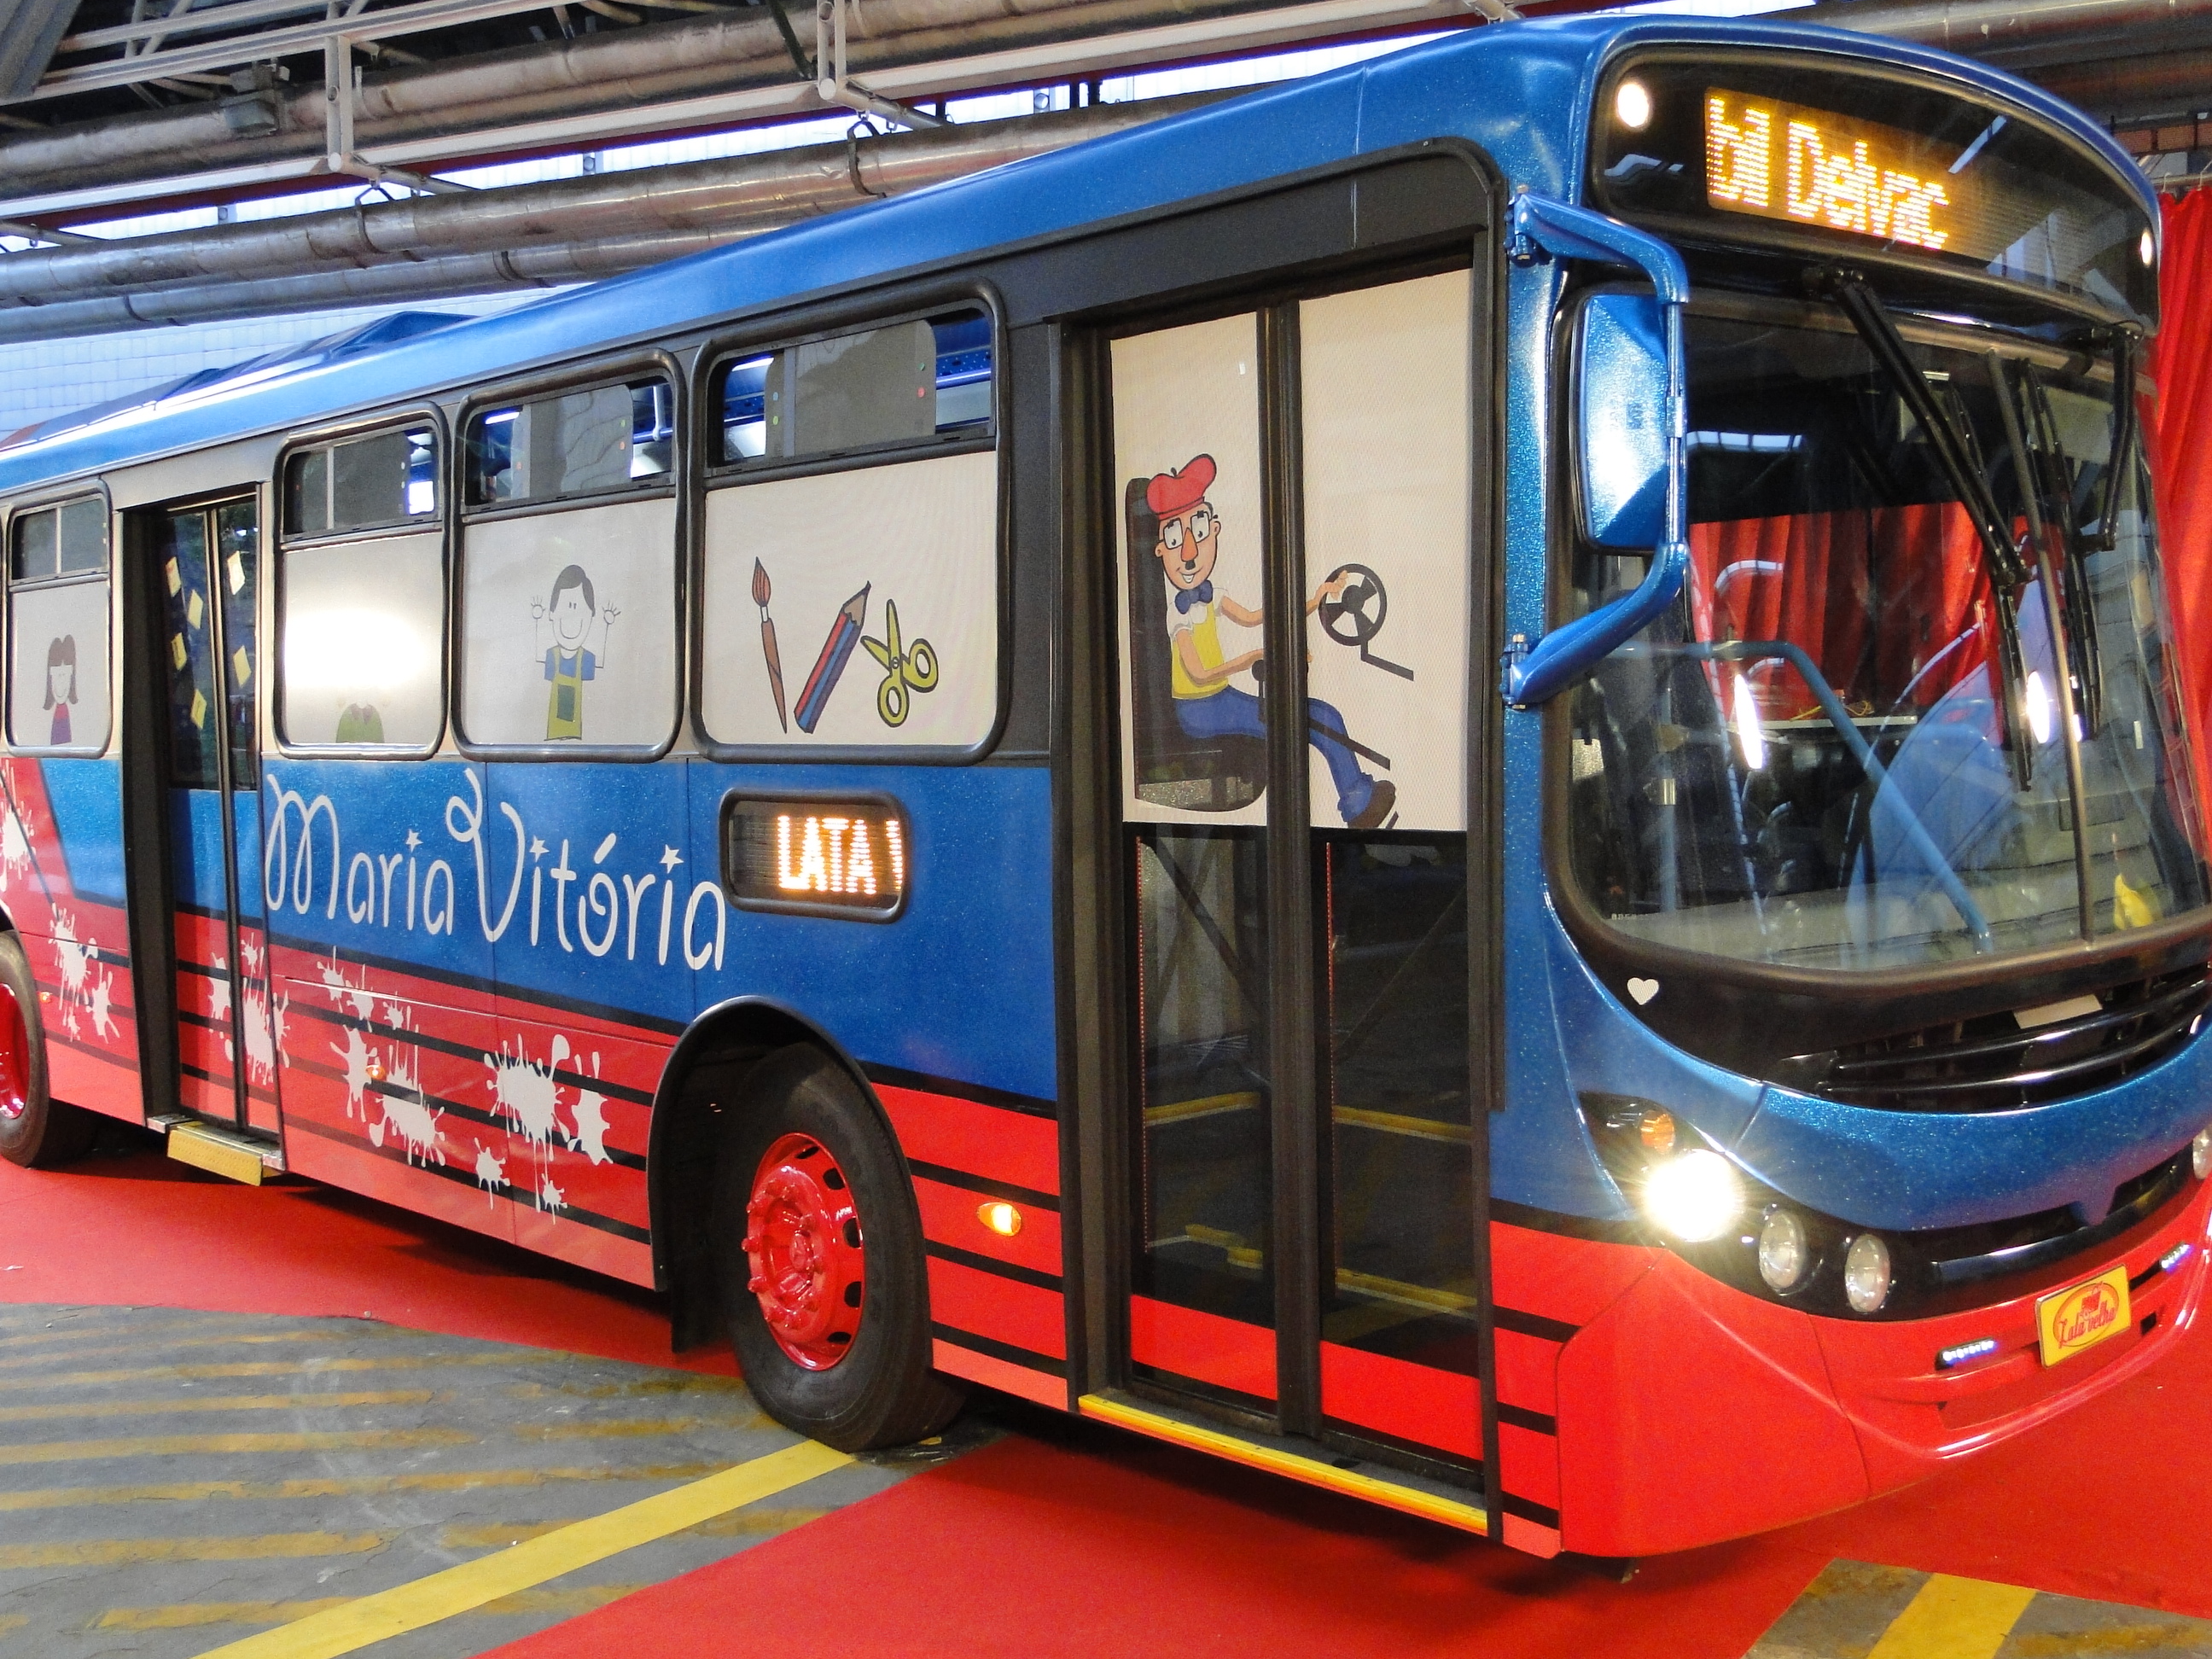 Tema lúdico com muitas cores e desenhos na lataria é utilizado na pintura do novo ônibus da APAE de Montes Claros